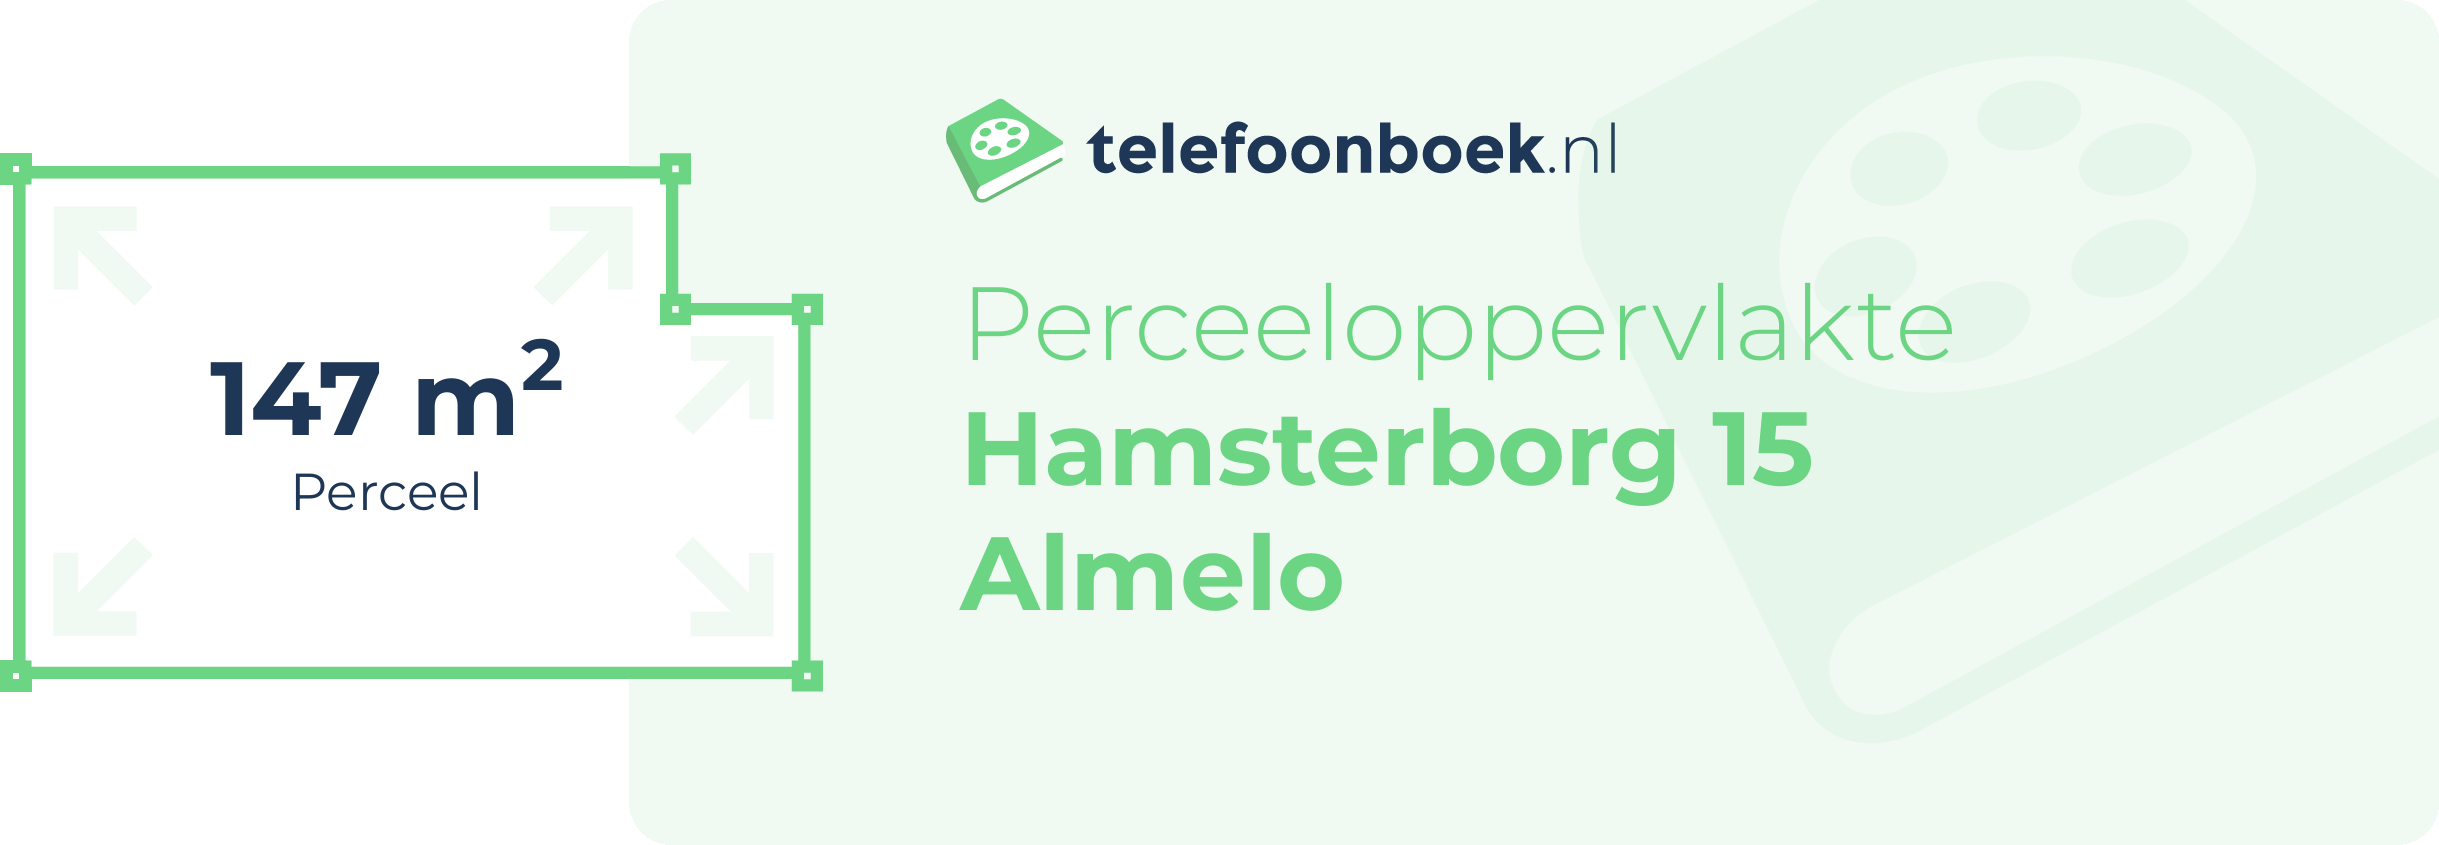 Perceeloppervlakte Hamsterborg 15 Almelo